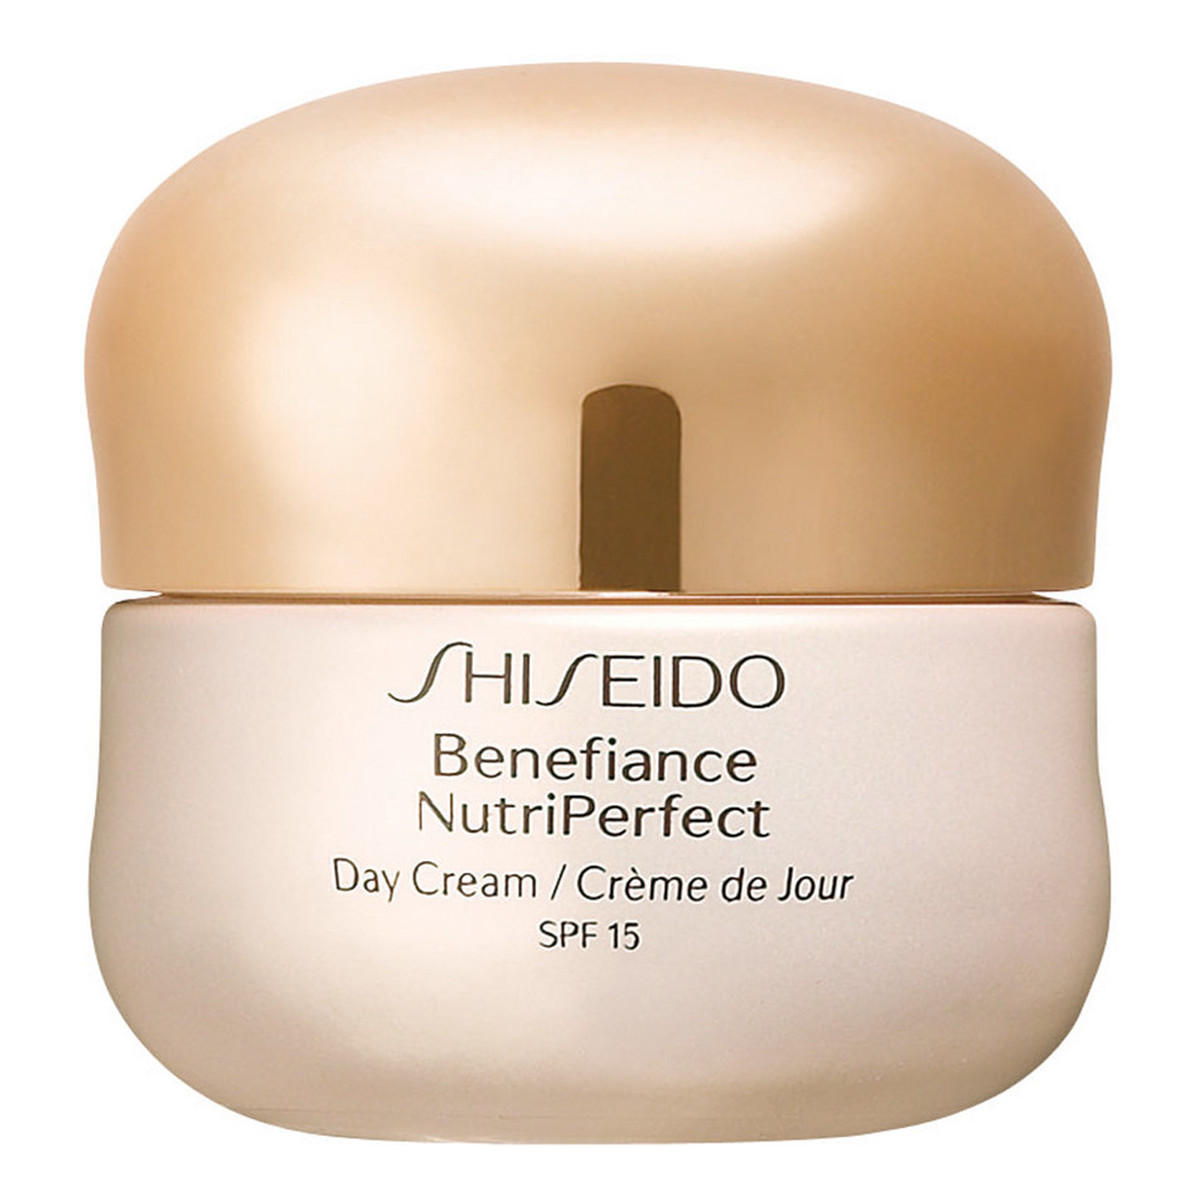 Shiseido Benefiance NutriPerfect odmładzający krem na dzień SPF 15 50ml